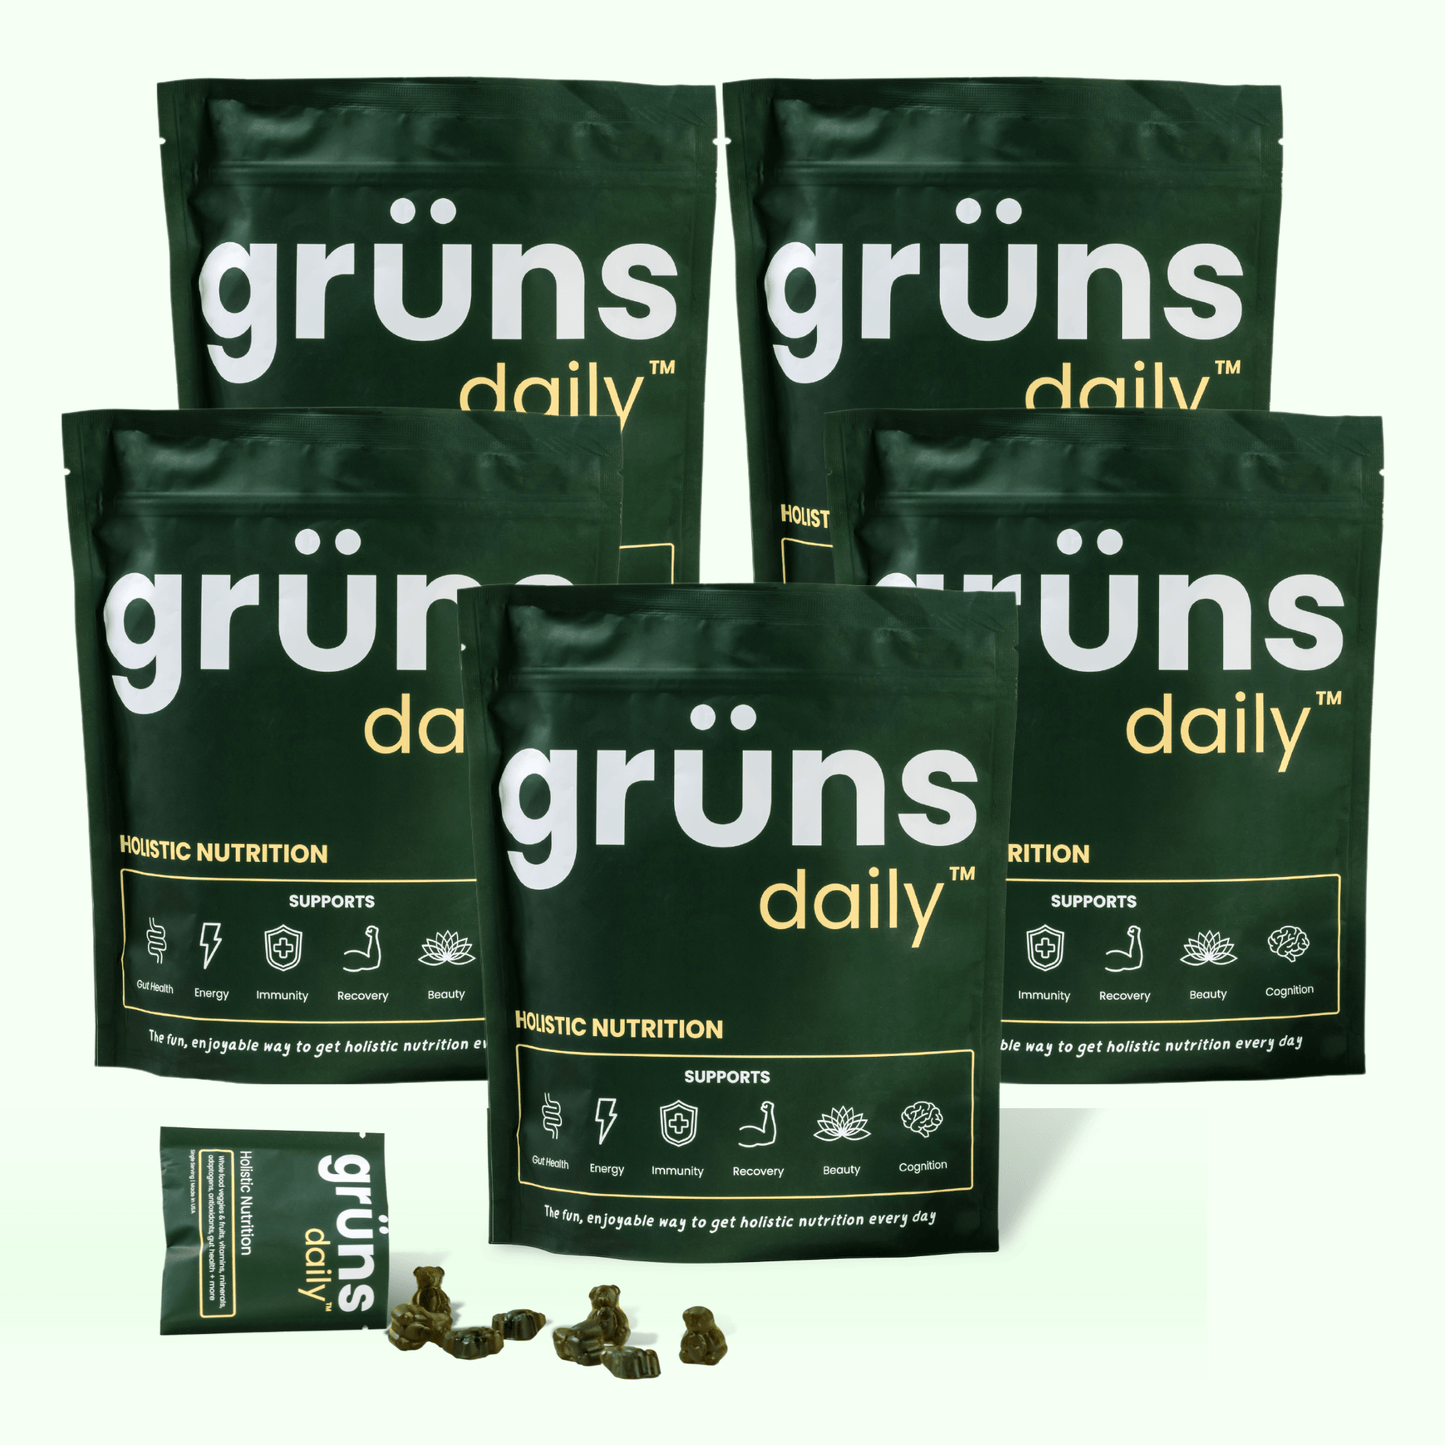 Grüns Daily Nutrition